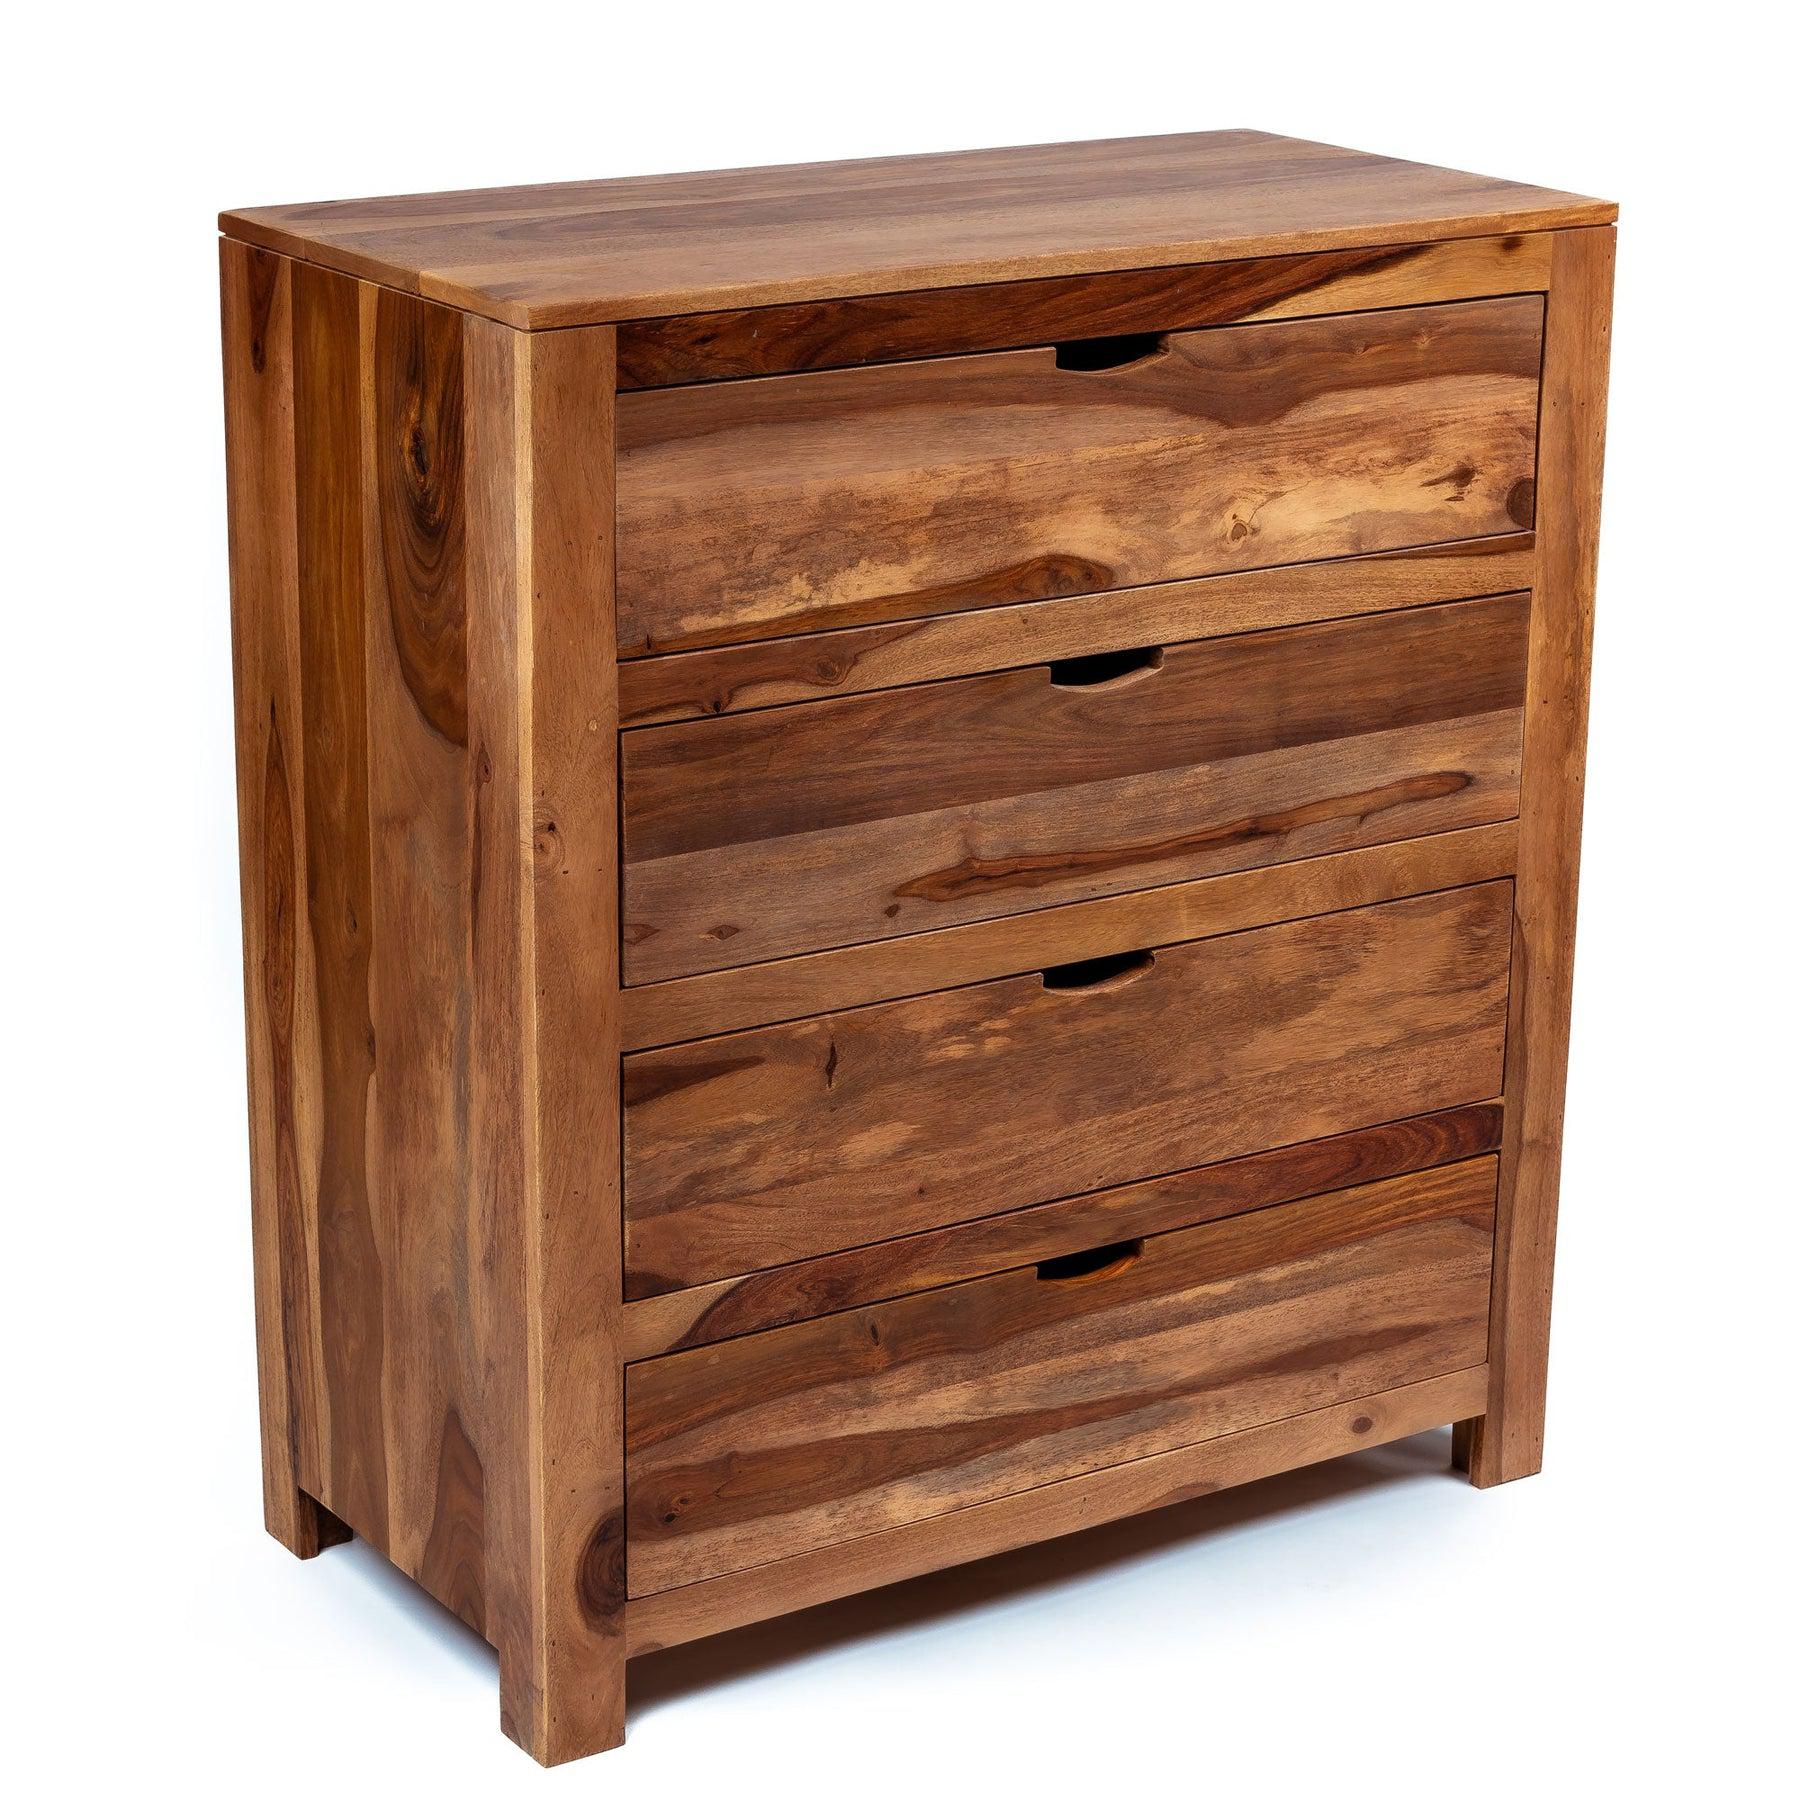 Zen Dresser | Solid wood Closet Storage With 4 Drawers for Living Room, Hallway, bedroom, Nursery | 84x43x94 cm